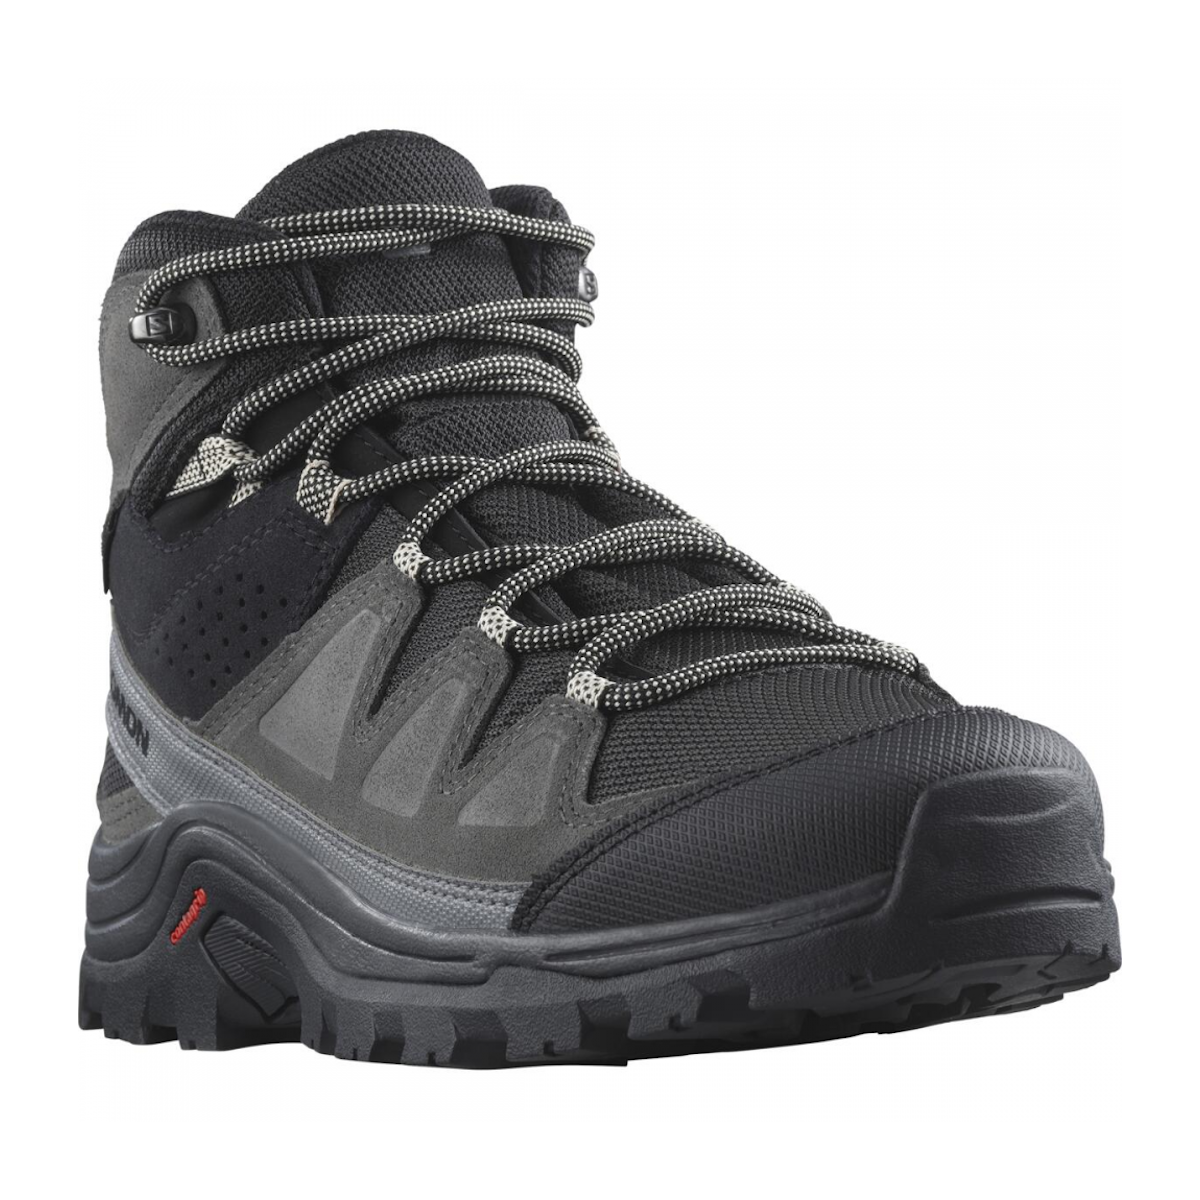 SALOMON QUEST ROVE GTX W hiking footwear - grey/black